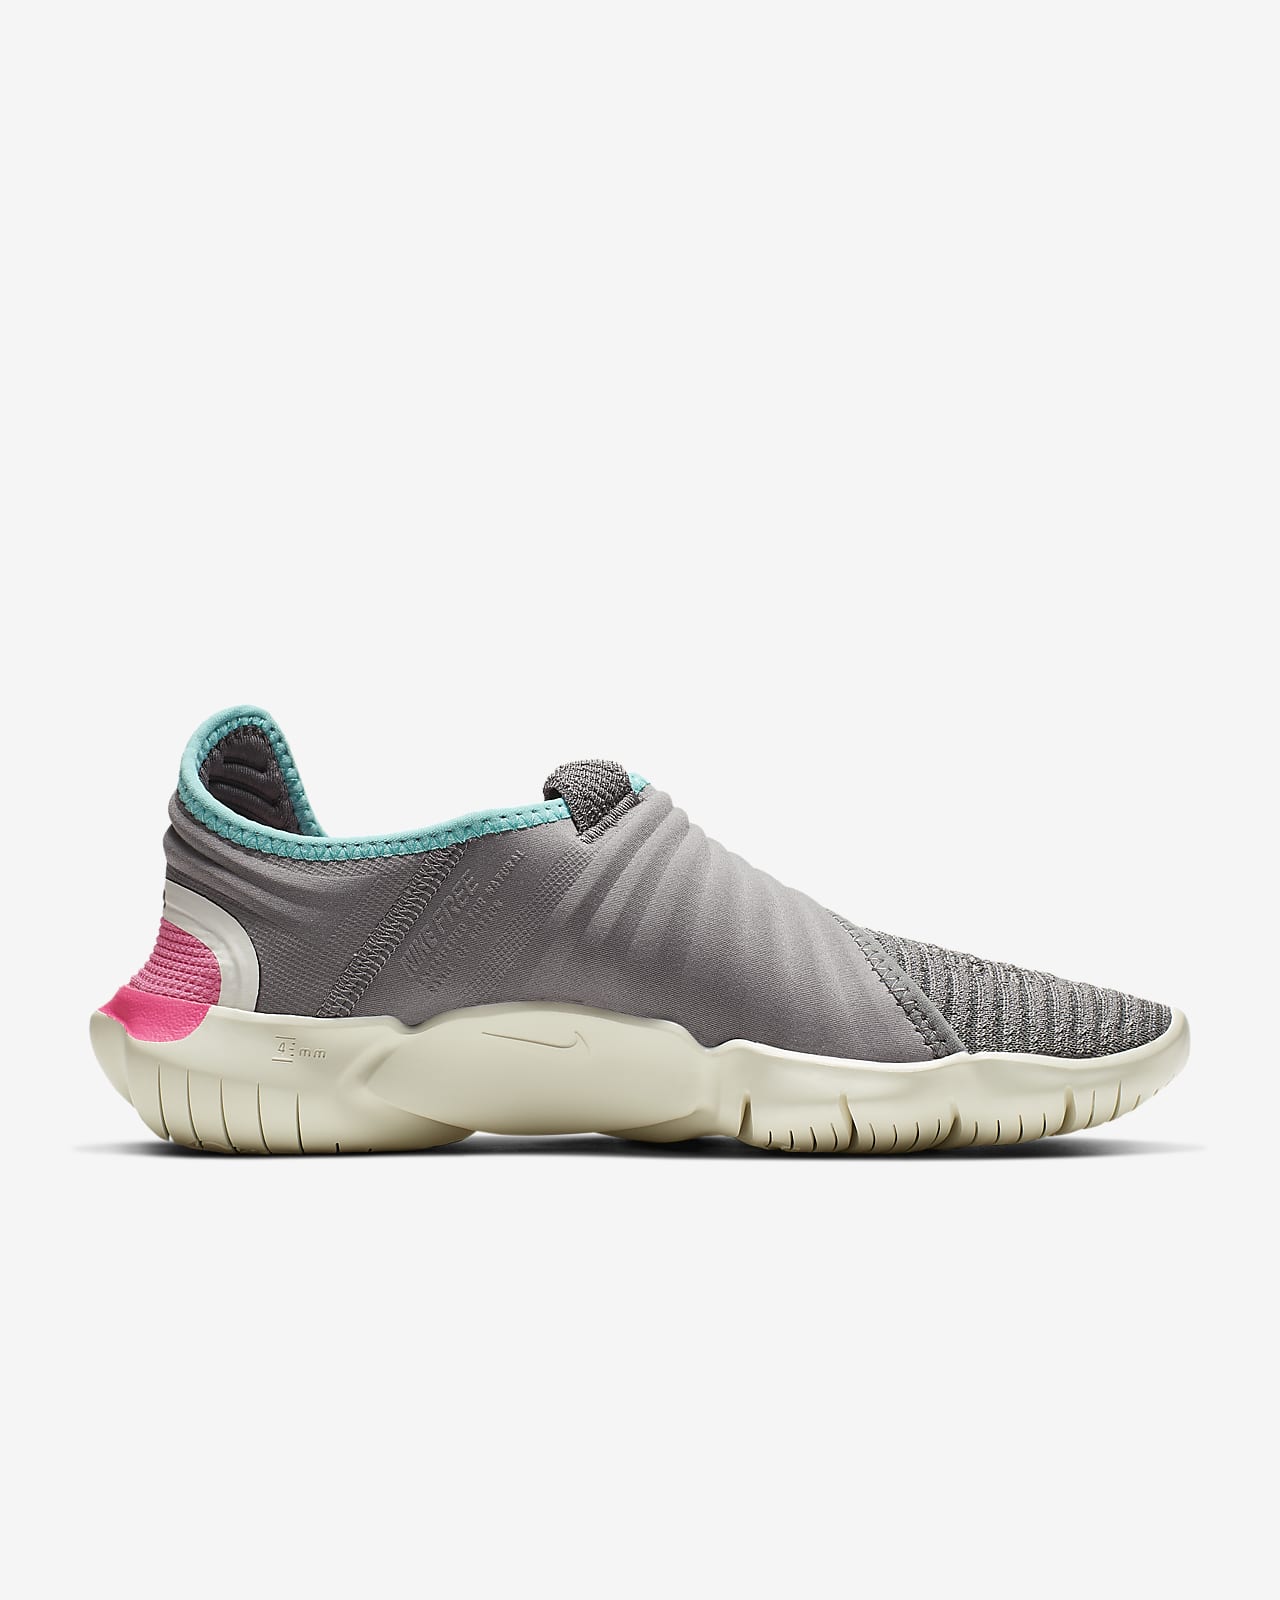 Nike Free RN Flyknit 3.0 Women's Shoe.